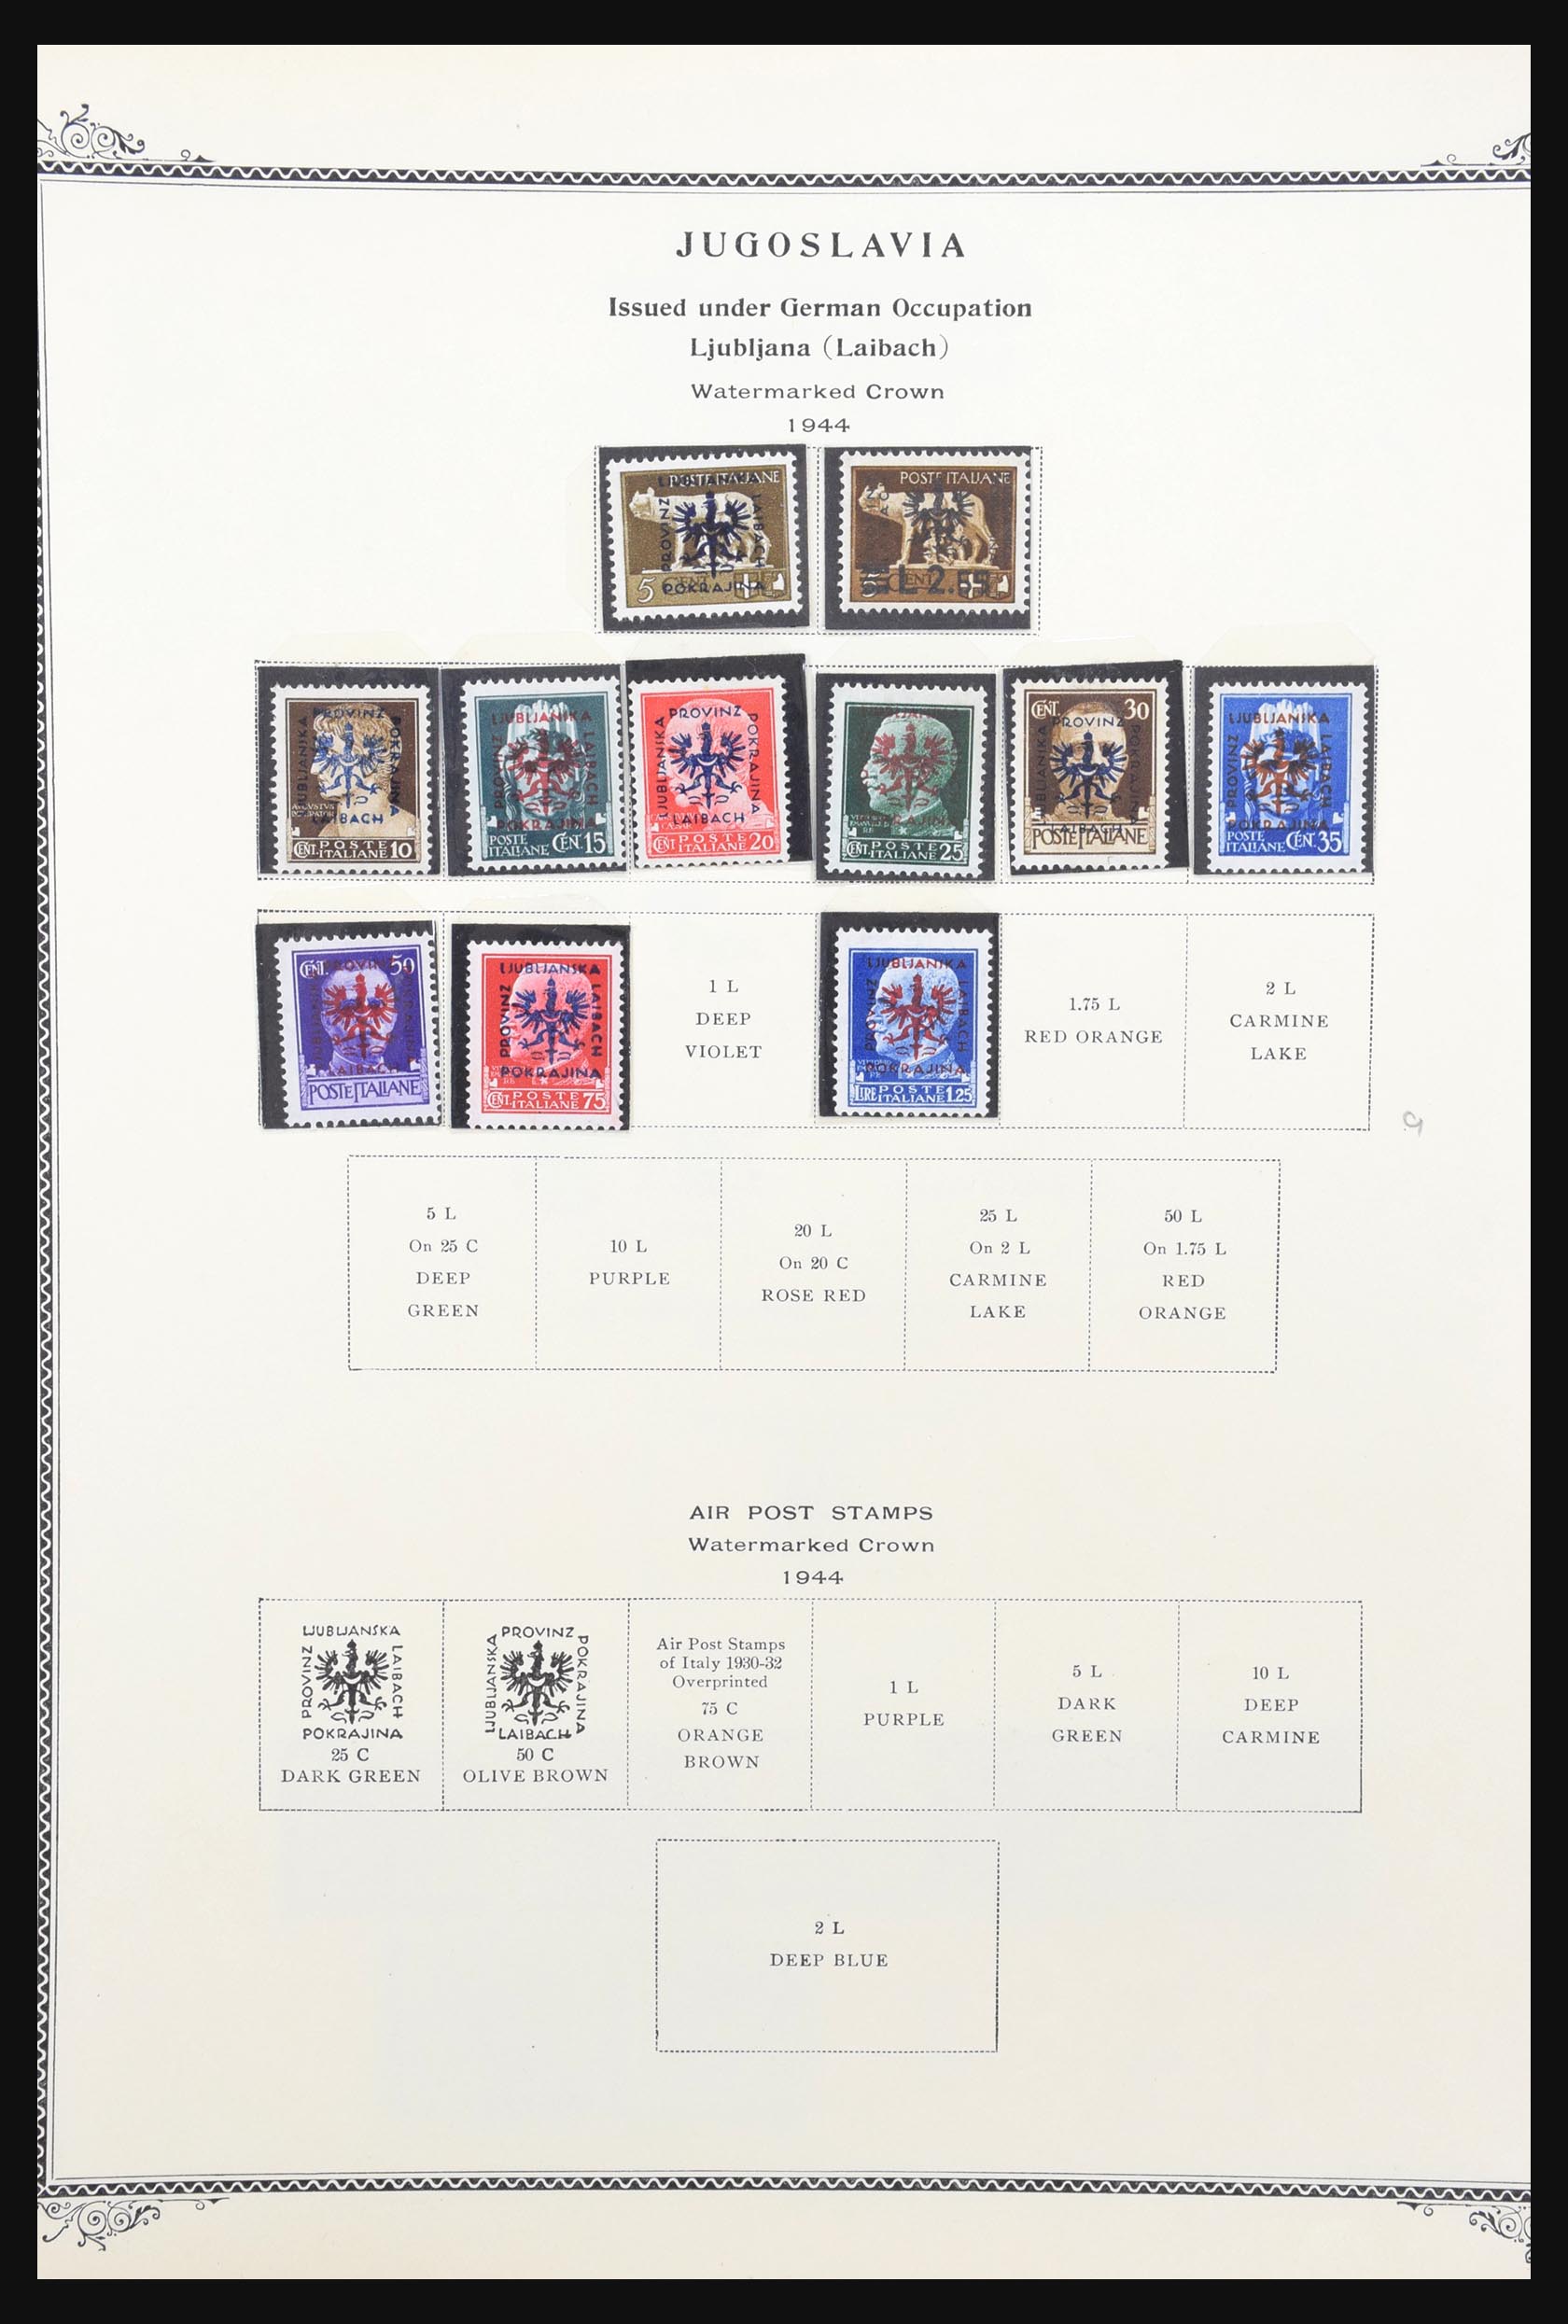 31300 102 - 31300 Duitsland superverzameling 1849-1990.